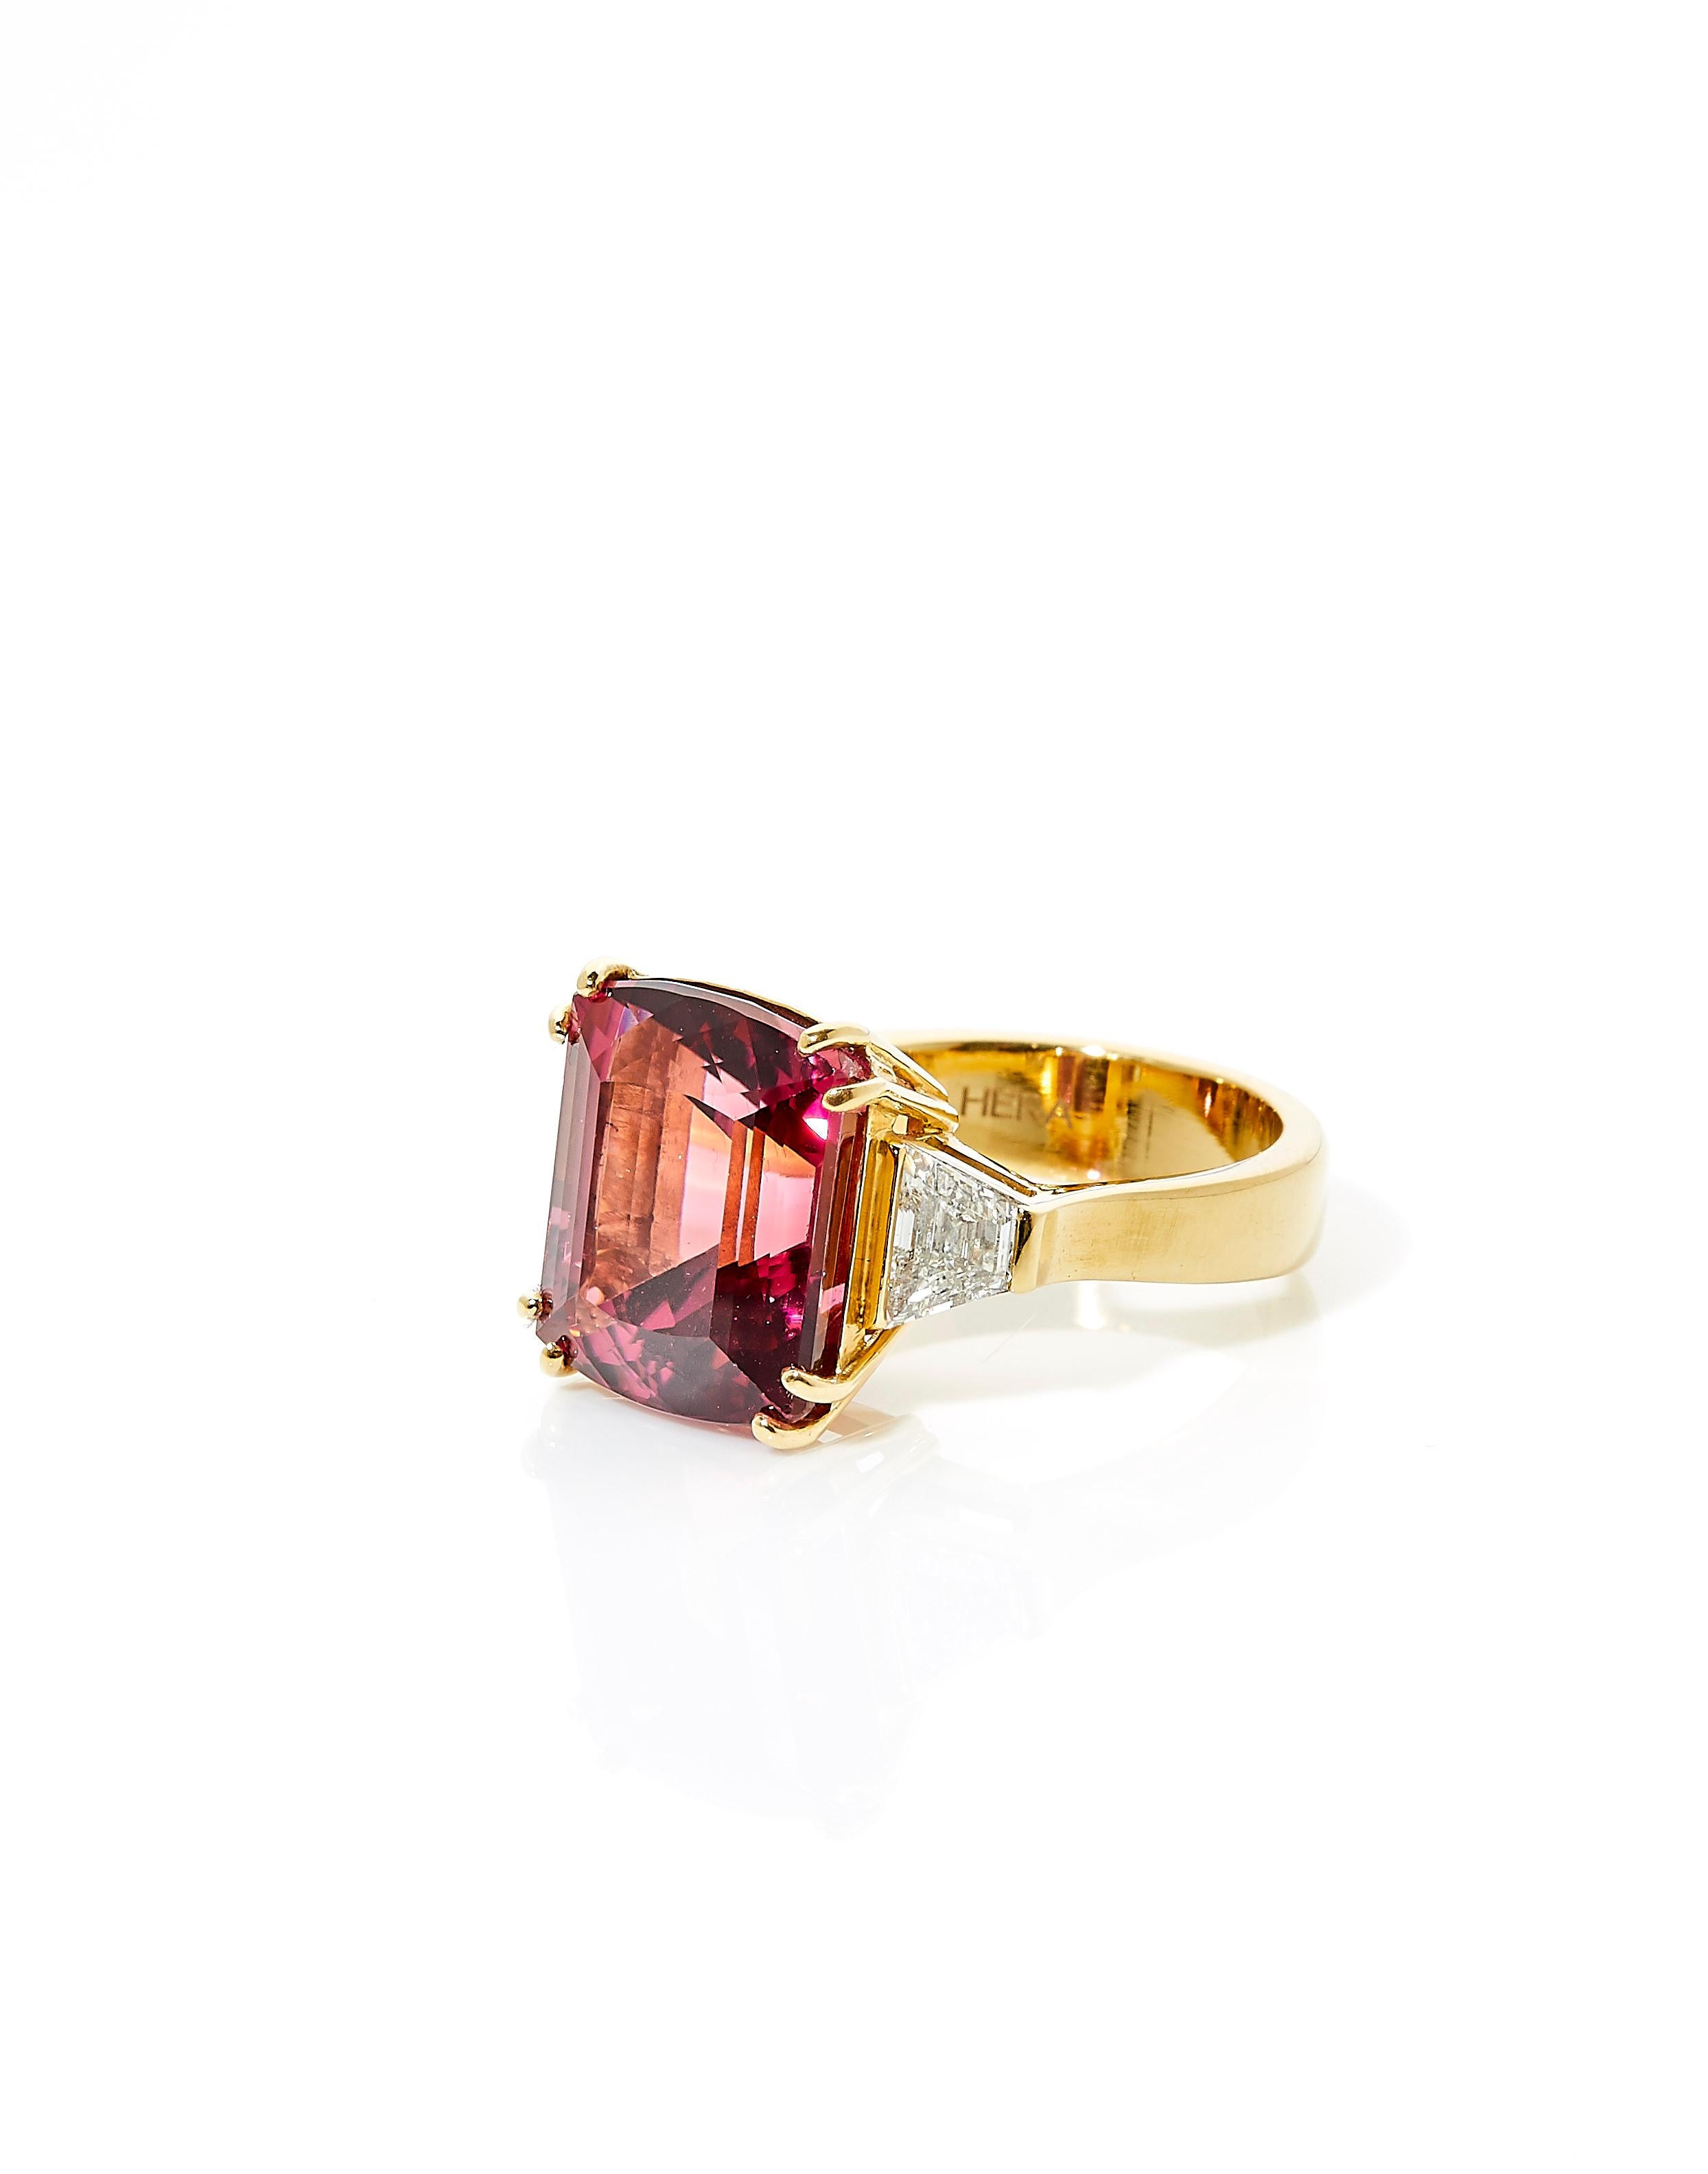 Contemporary 18 Karat Yellow Gold Ring with 10.74 Carat Vivid Pink Tourmaline and Diamonds